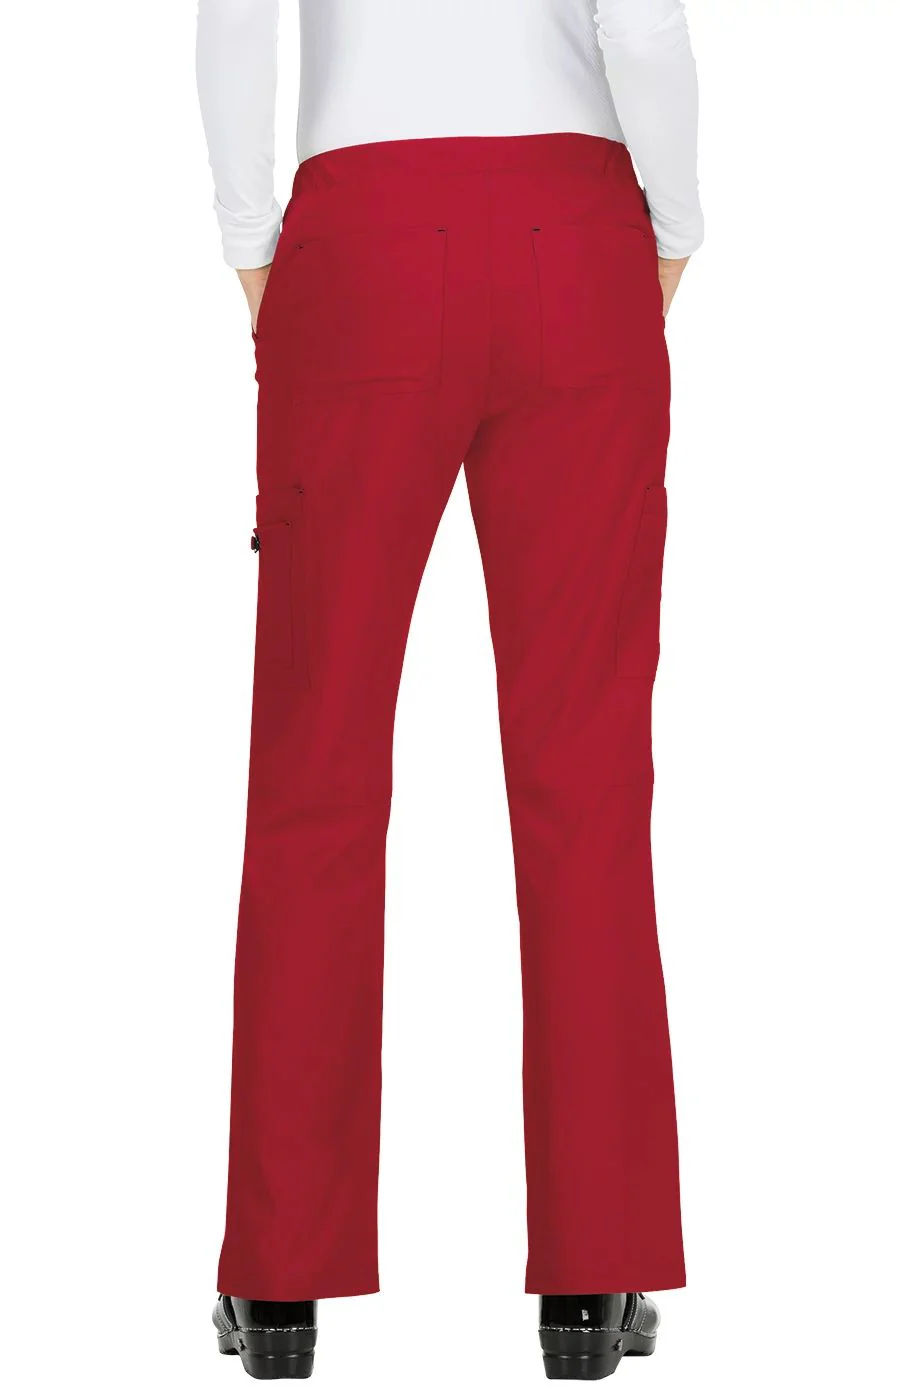 Koi Basics Pantalón Holly Mujer Ruby Red